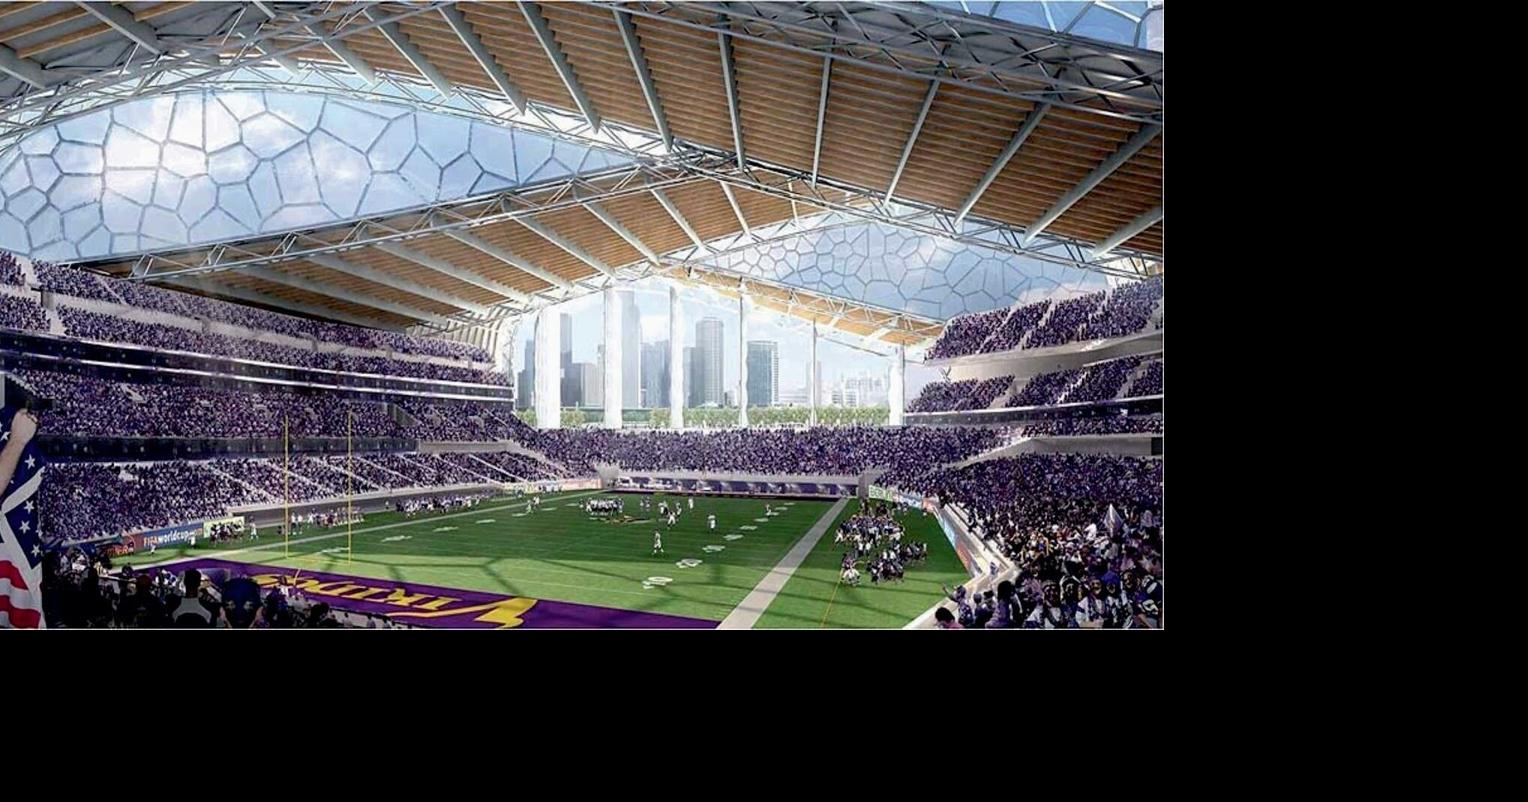 Vikings release stadium design plans, Local News